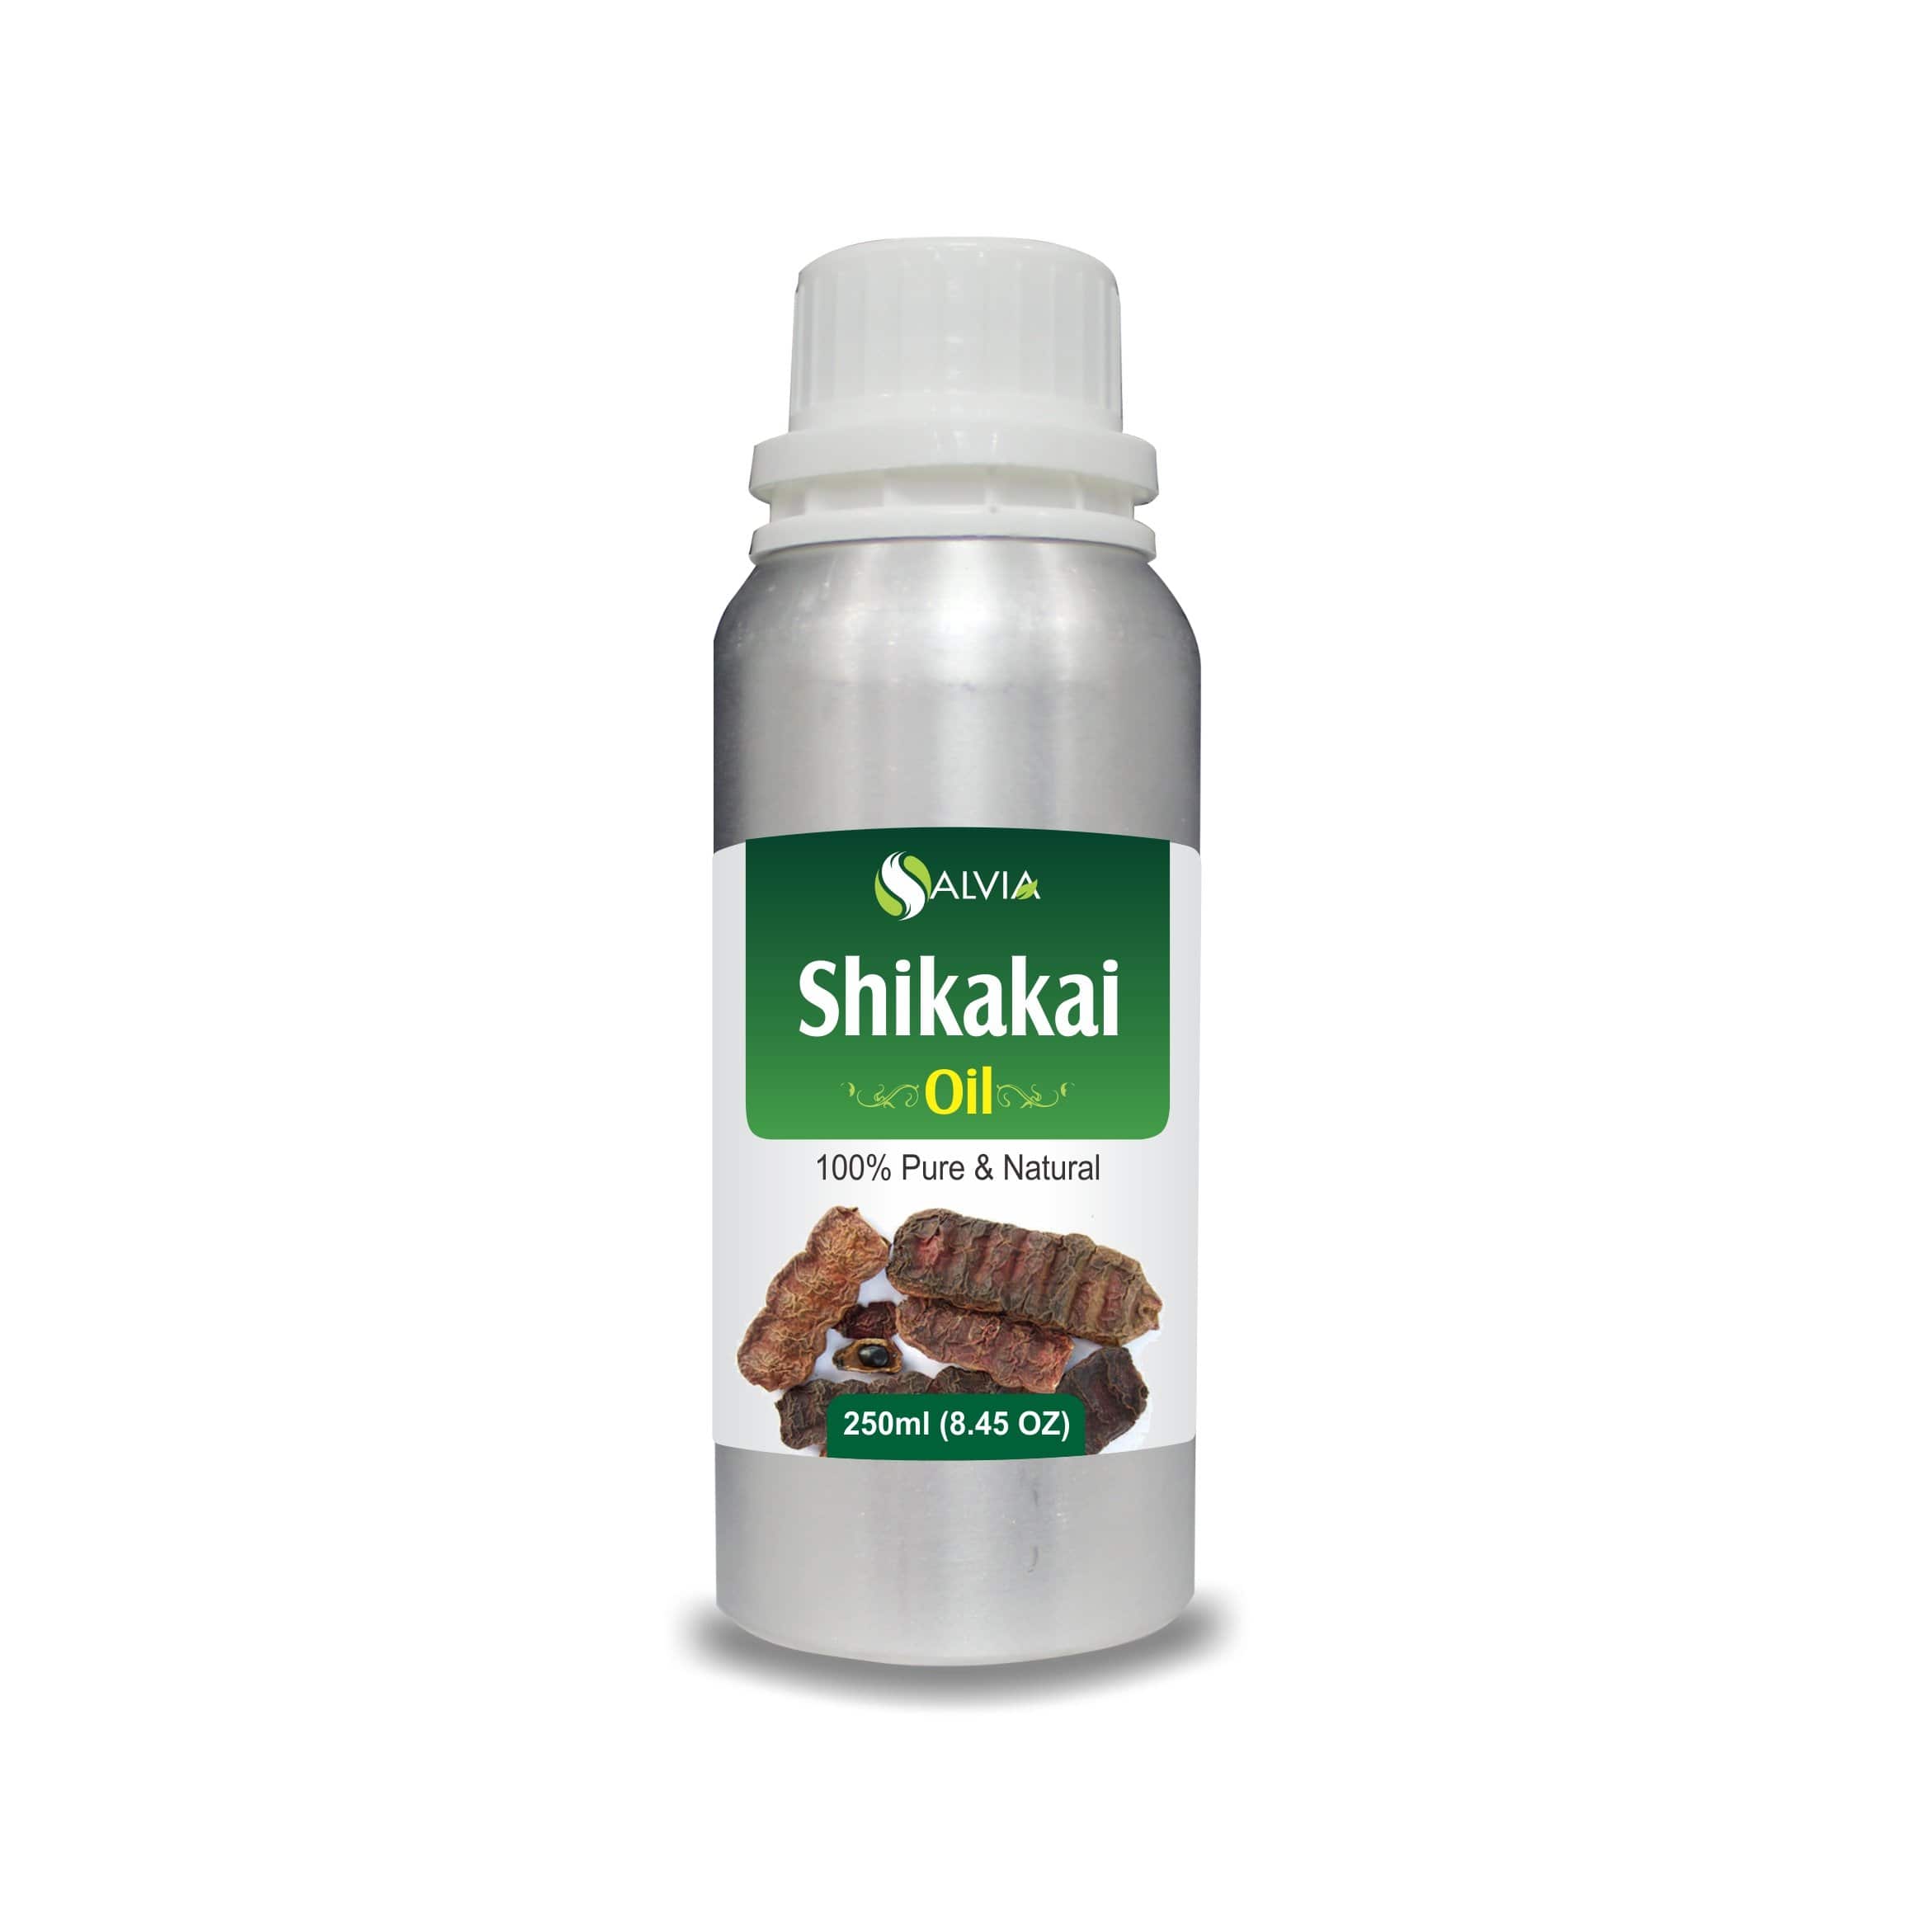 shikakai oil benefits